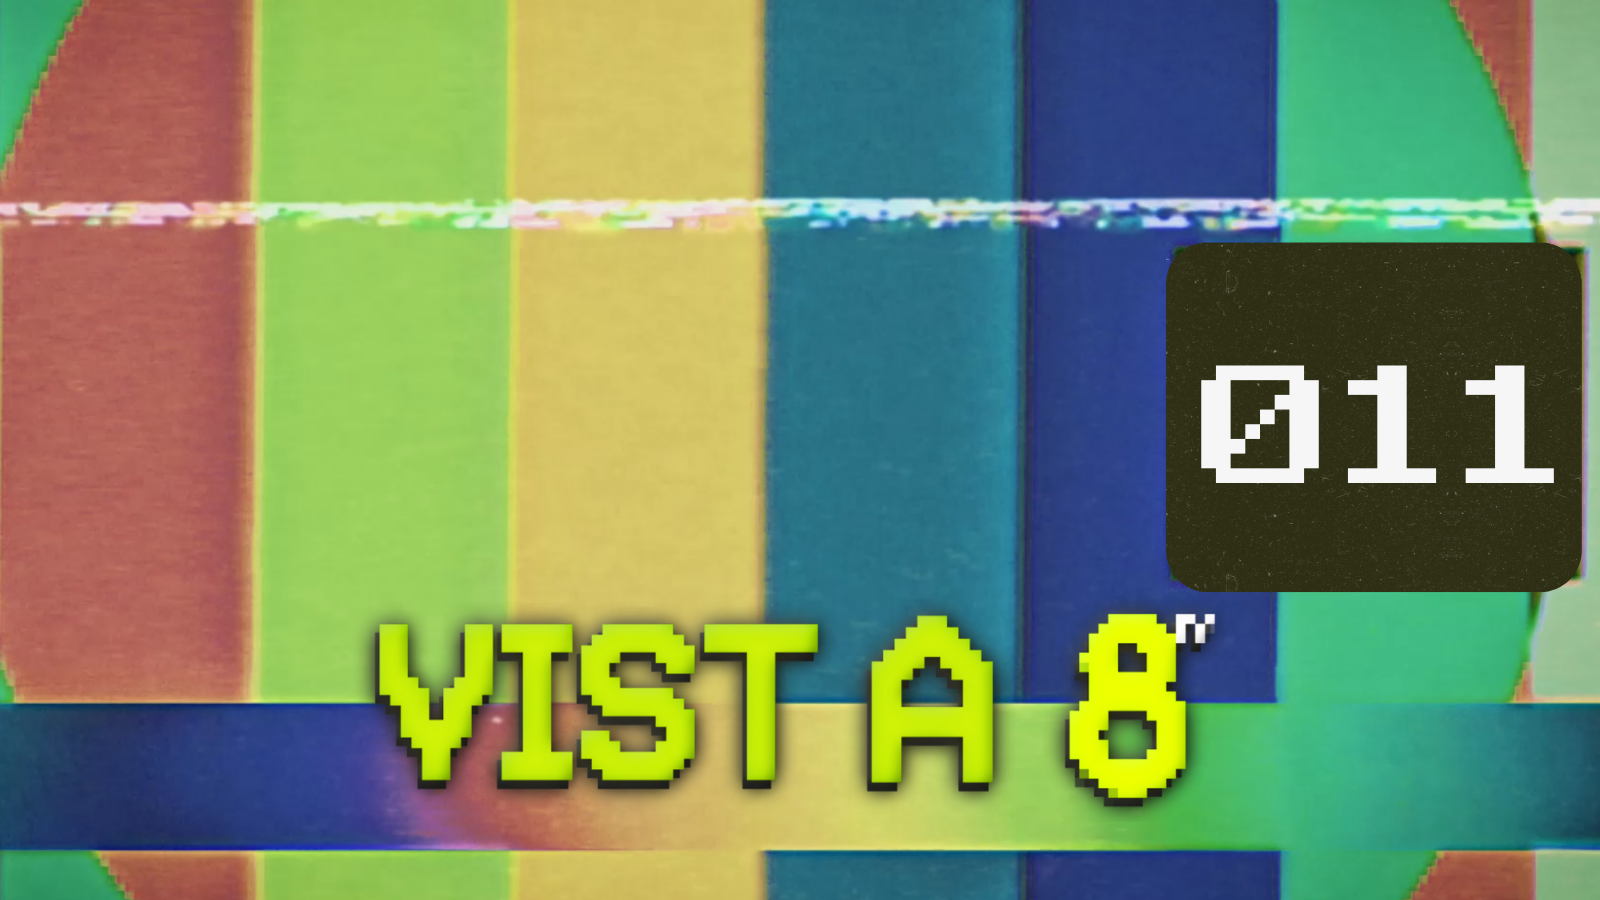 VIST A 8TV - EPISODI 11